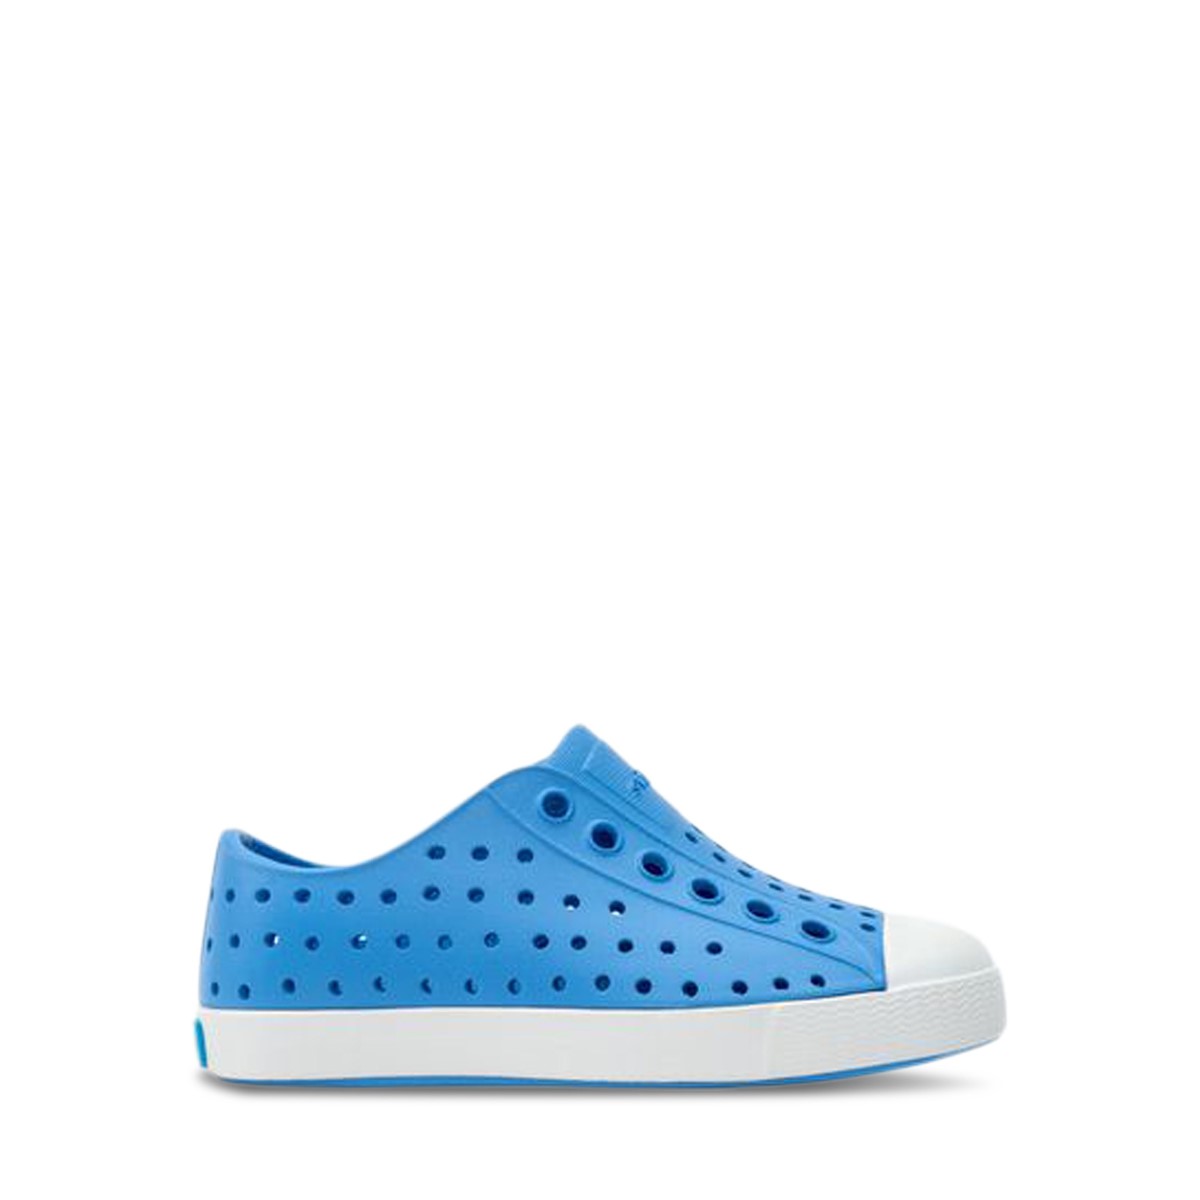 Little Kids' Jefferson Slip-On Shoes in Blue